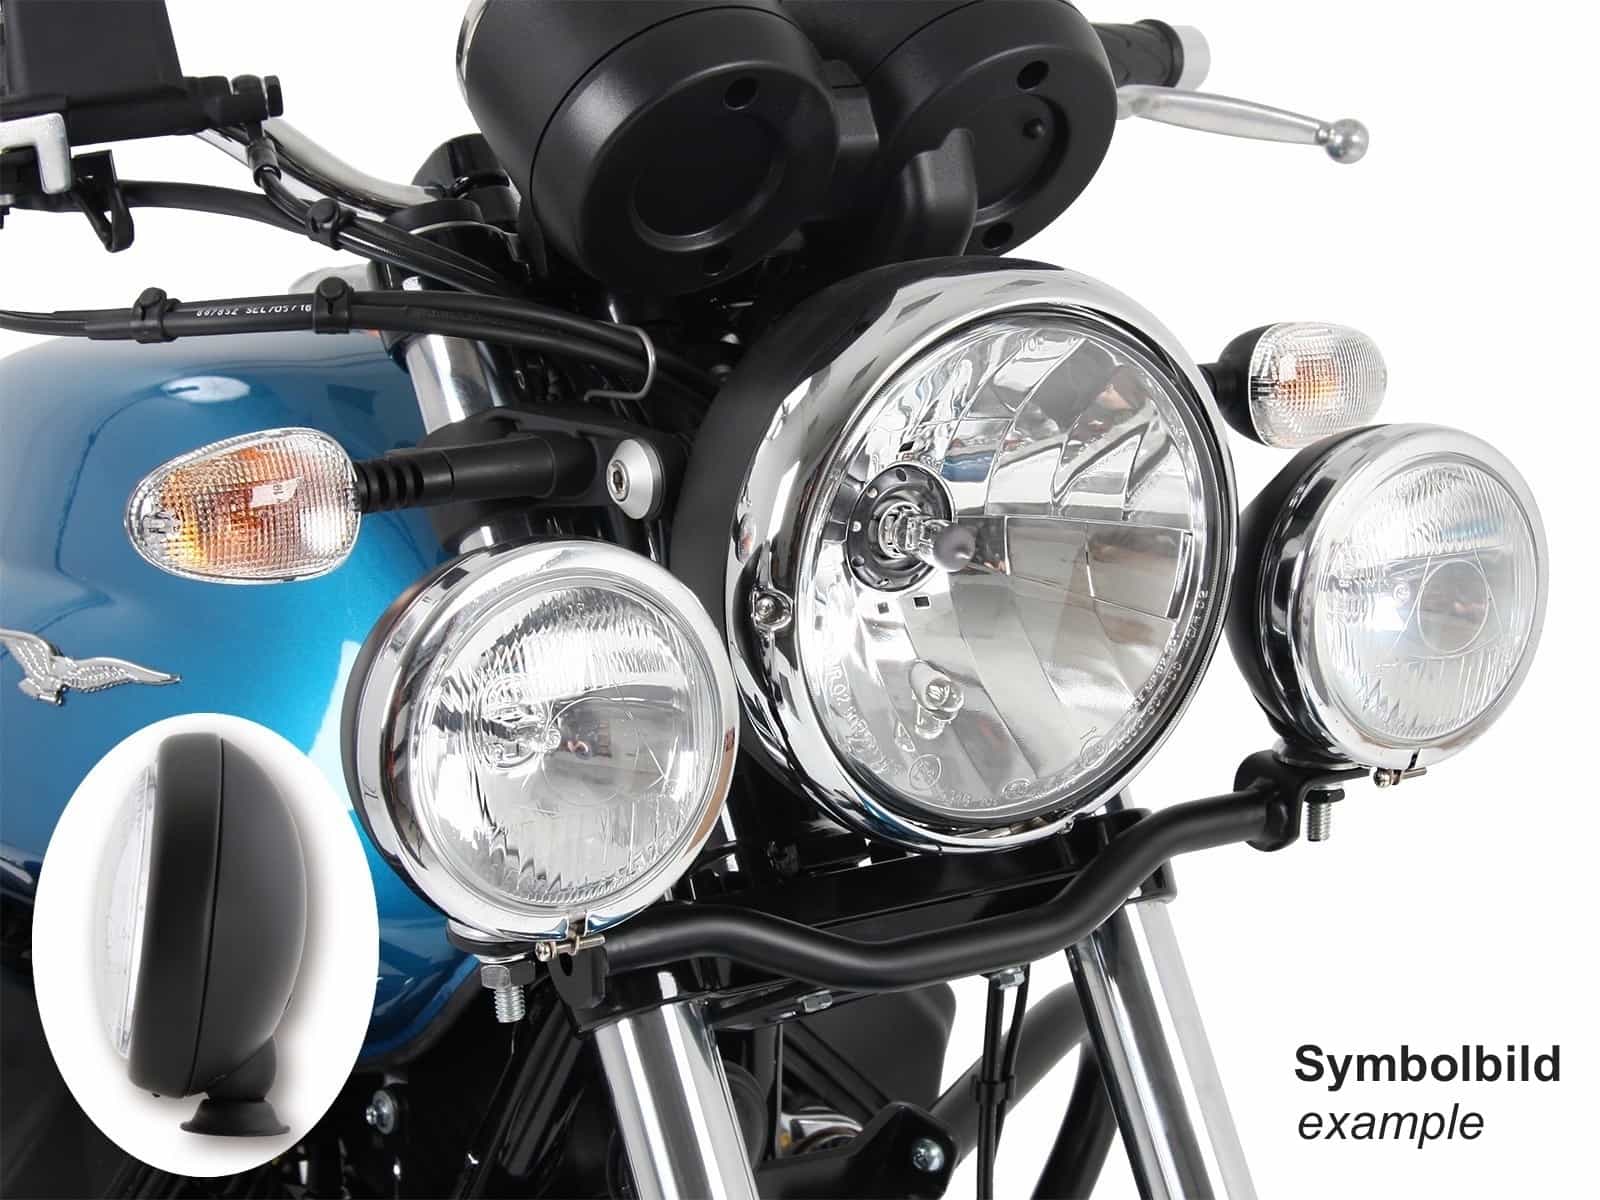 Twinlight Zusatzscheinwerferset (Fernlicht) inkl. Halter und Kabel schwarz für Moto Guzzi V7 III (Stone, Special, Anniversario, Racer) (2017-2020)